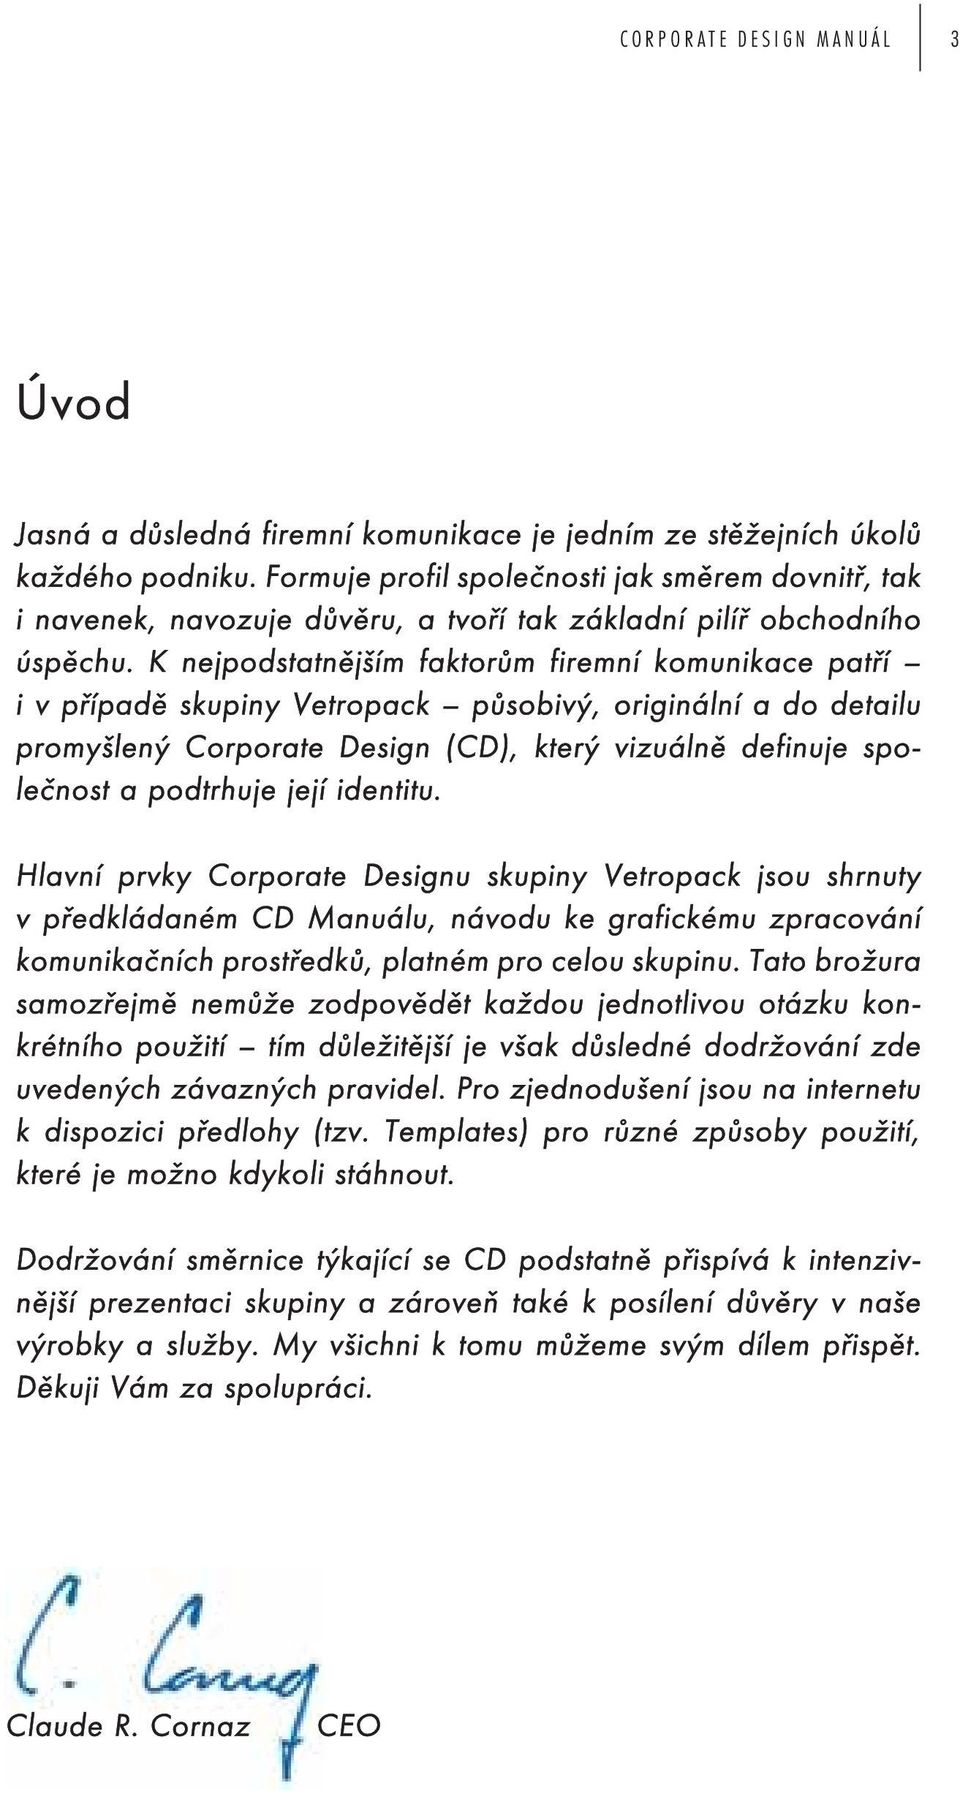 K nejpodstatnějším faktorům firemní komunikace patří i v případě skupiny Vetropack působivý, originální a do detailu promyšlený Corporate Design (CD), který vizuálně definuje společnost a podtrhuje